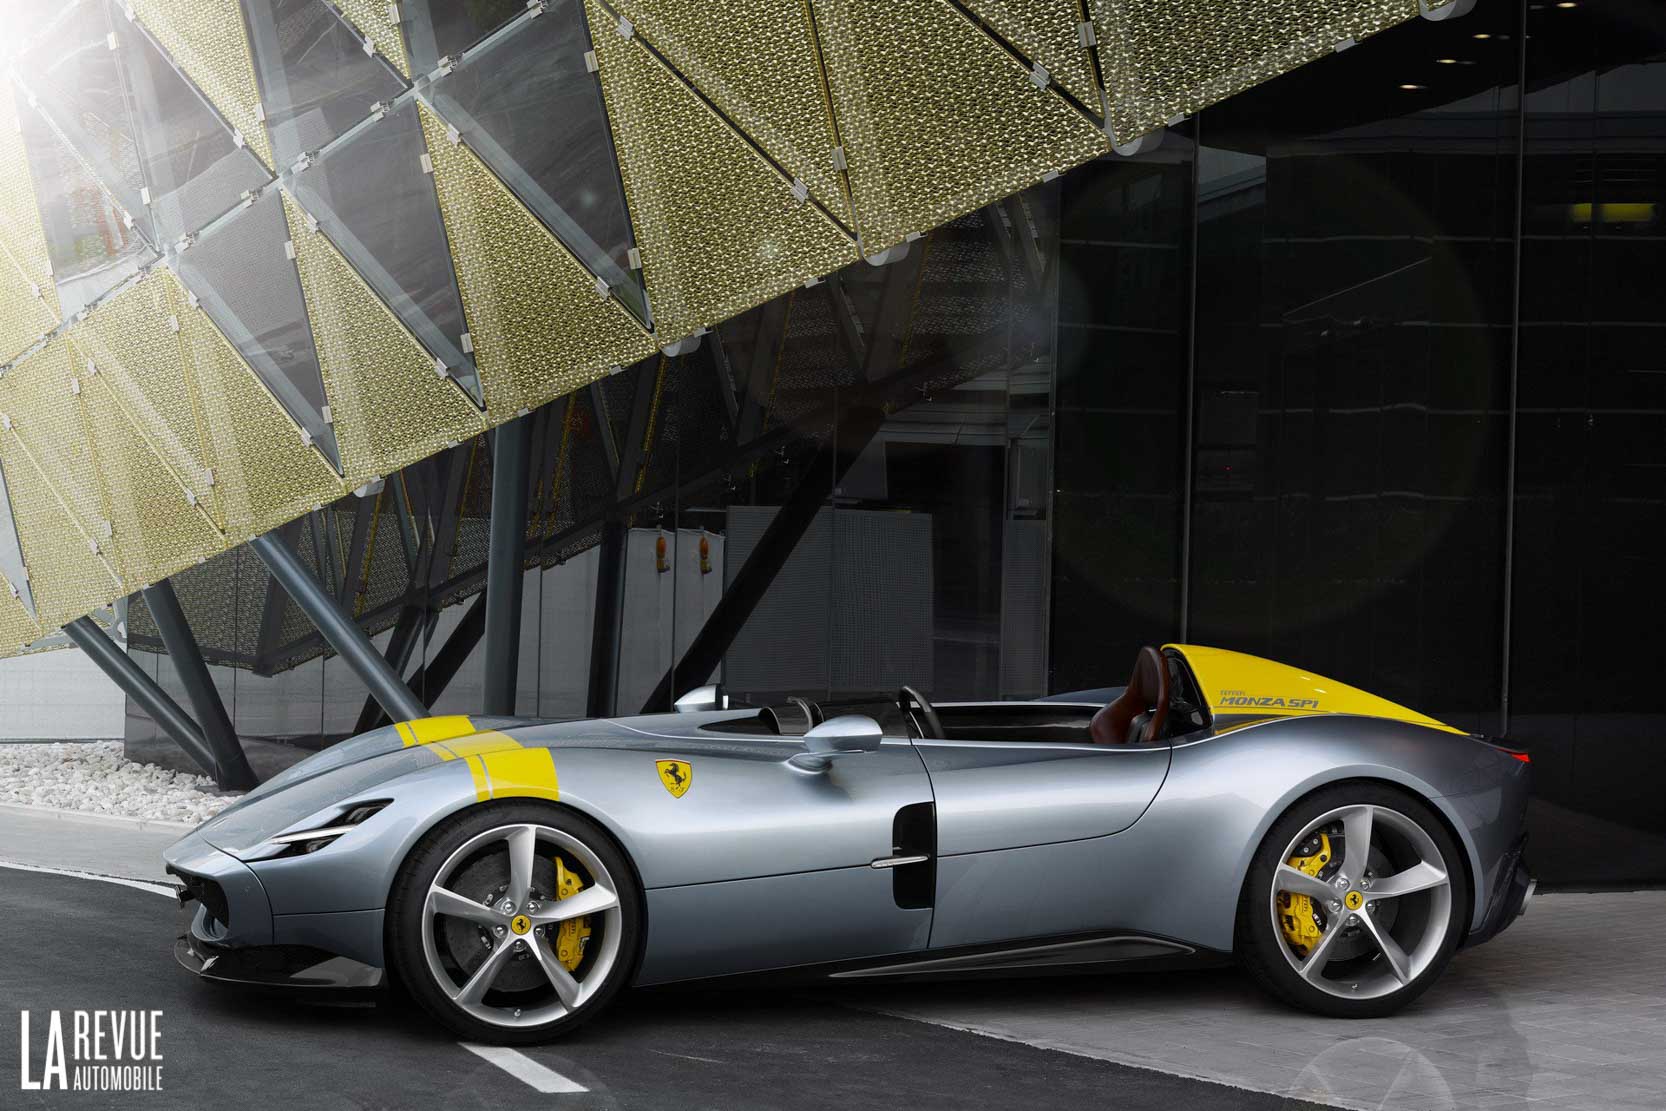 Image principale de l'actu: Ferrari monza sp1 et sp2 les surprises de la marque italienne 